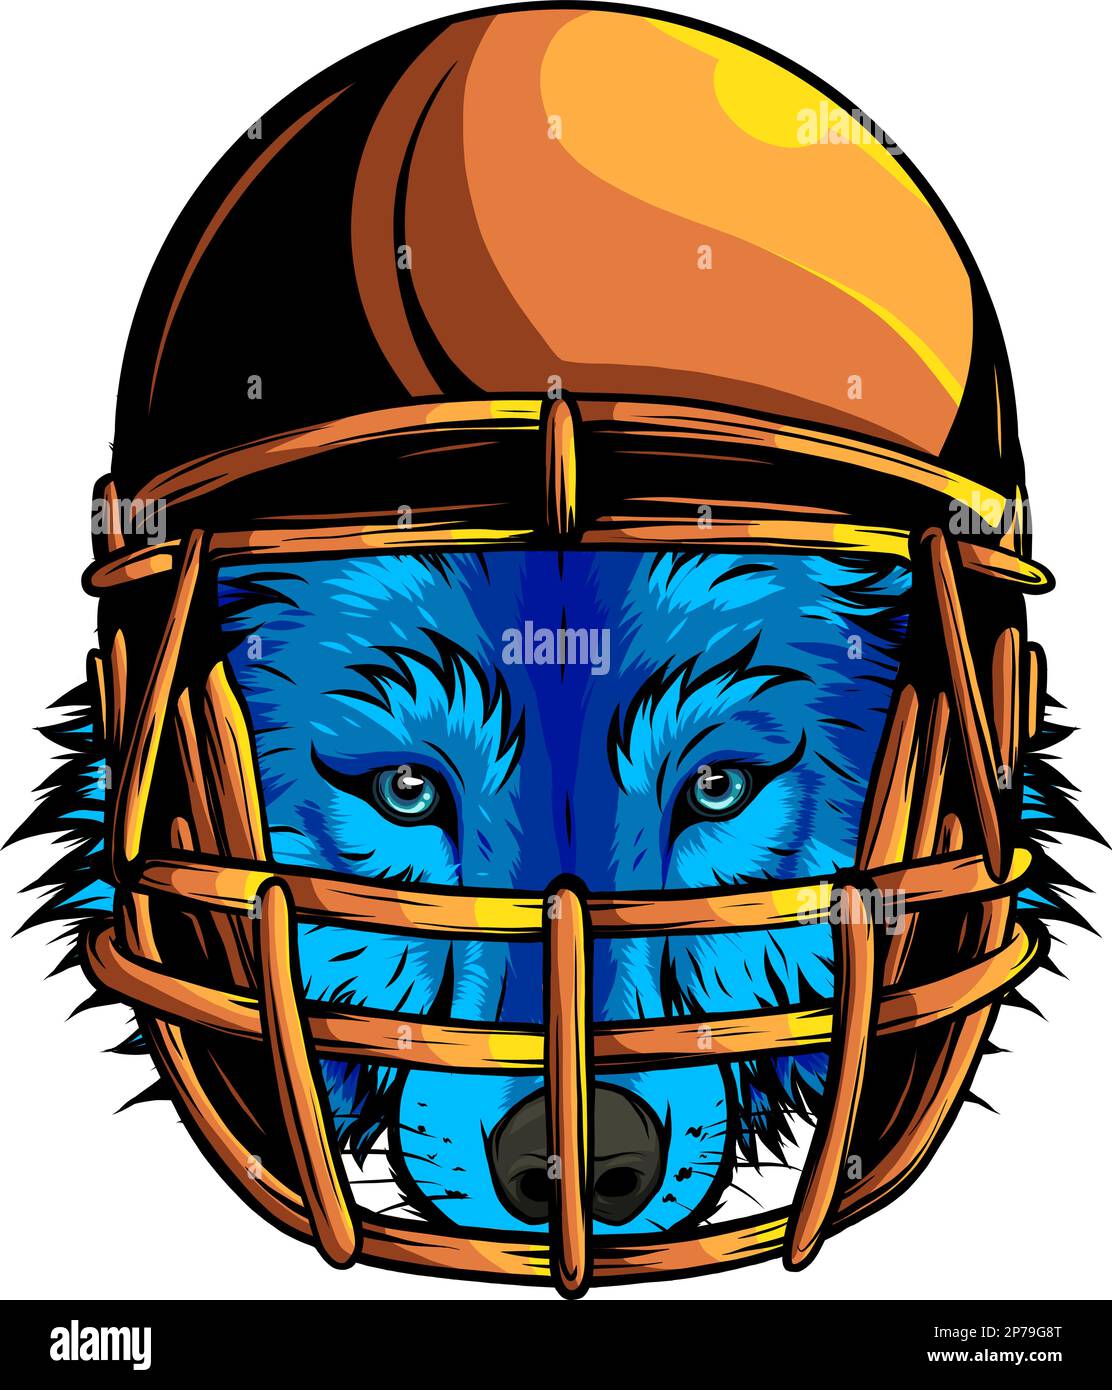 Le loup qui devint la mascotte du football américain, et portait le casque Illustration de Vecteur